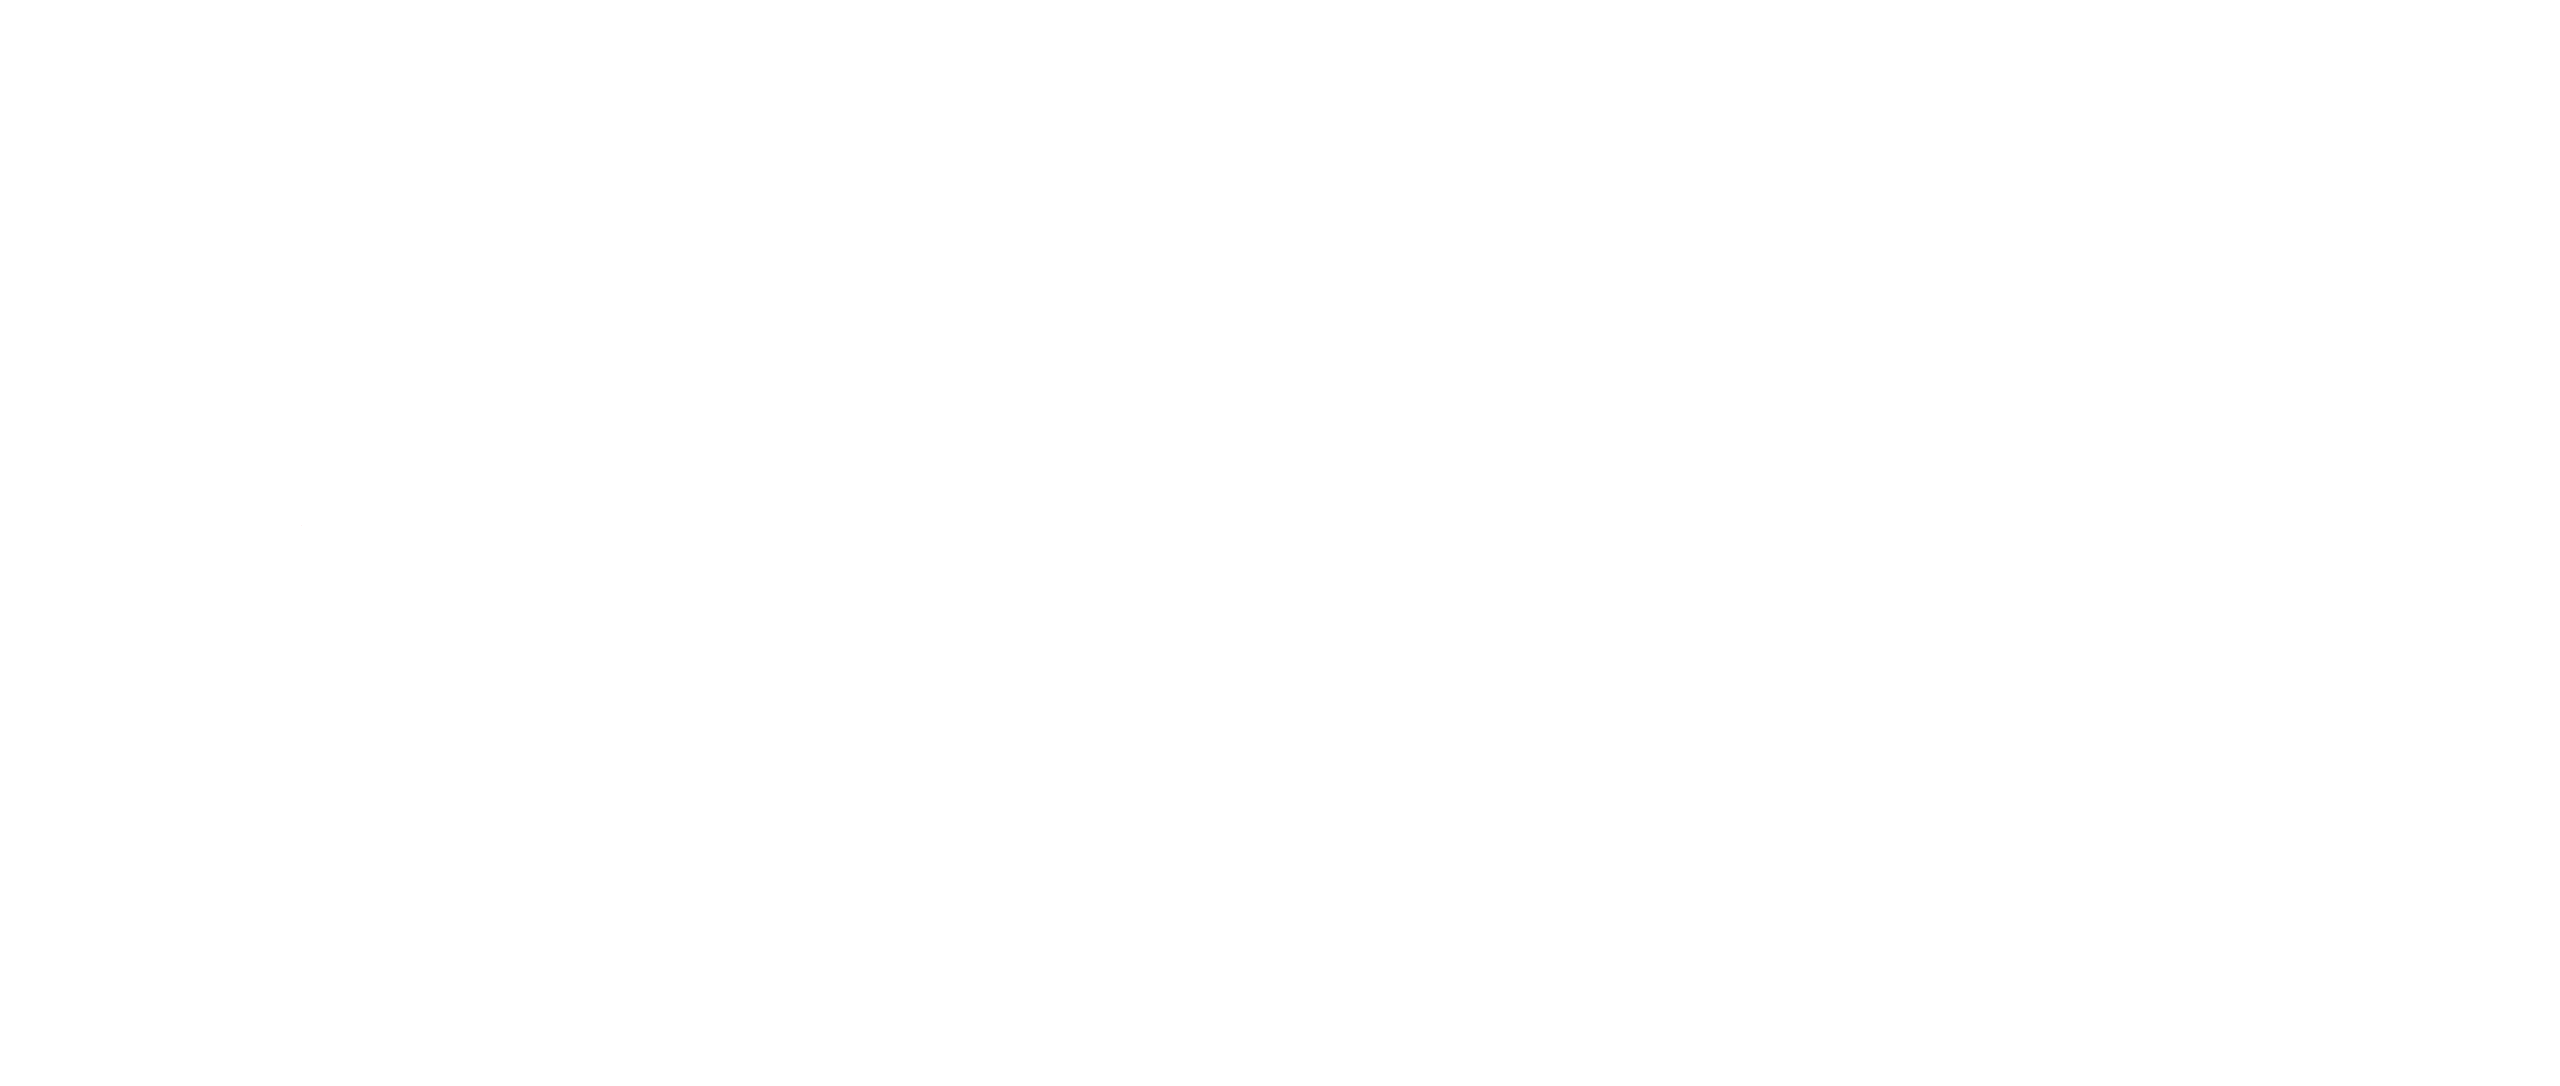 Logo UPEC 